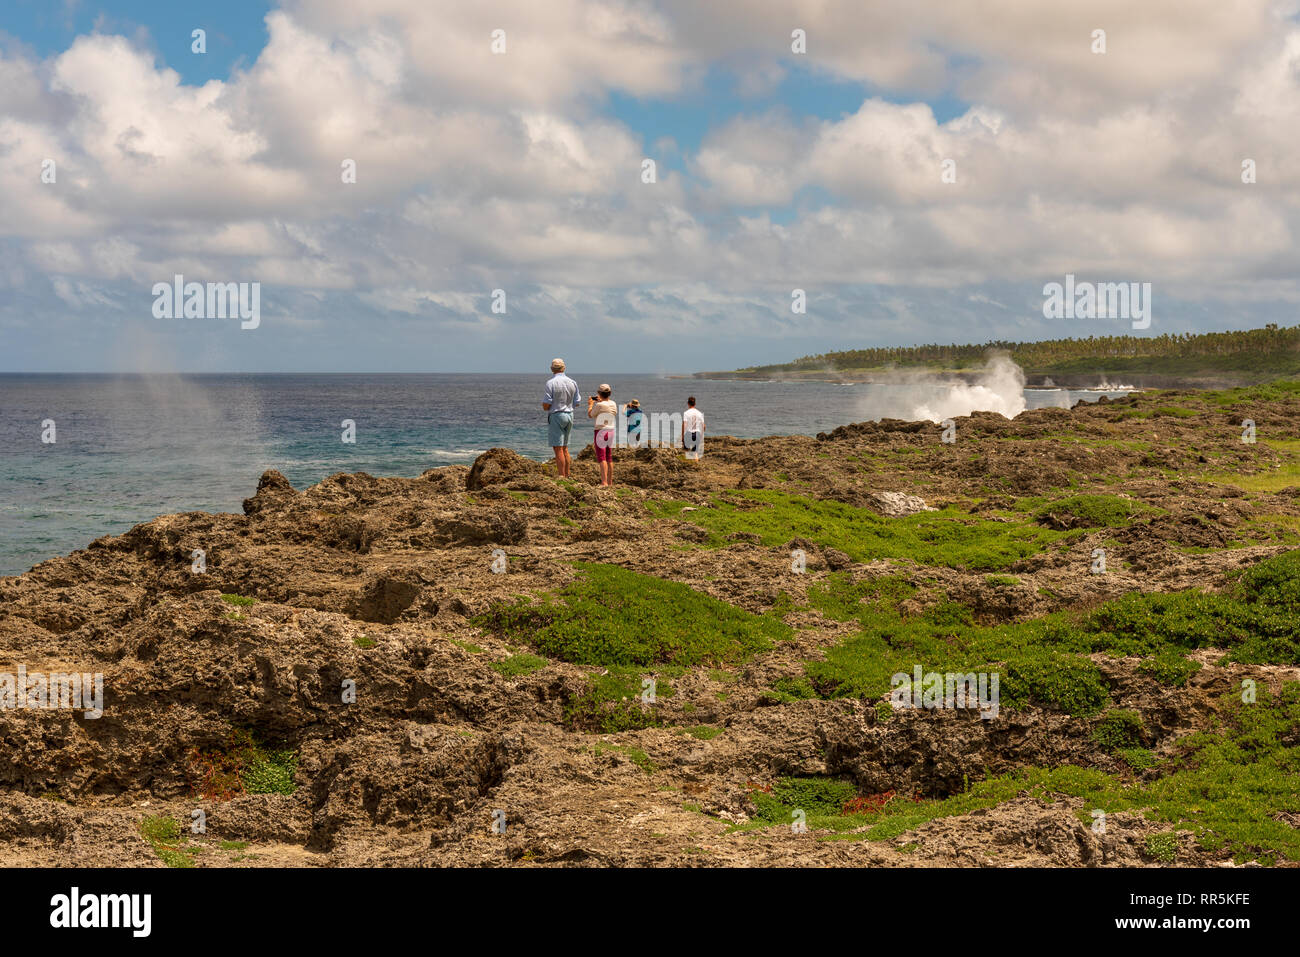 Küste, Tonga - - März 10, 2018. Eine Gruppe von Touristen steht auf einer Klippe an der Küste und beobachtet Blowholes schießt das Wasser in den Himmel. Stockfoto